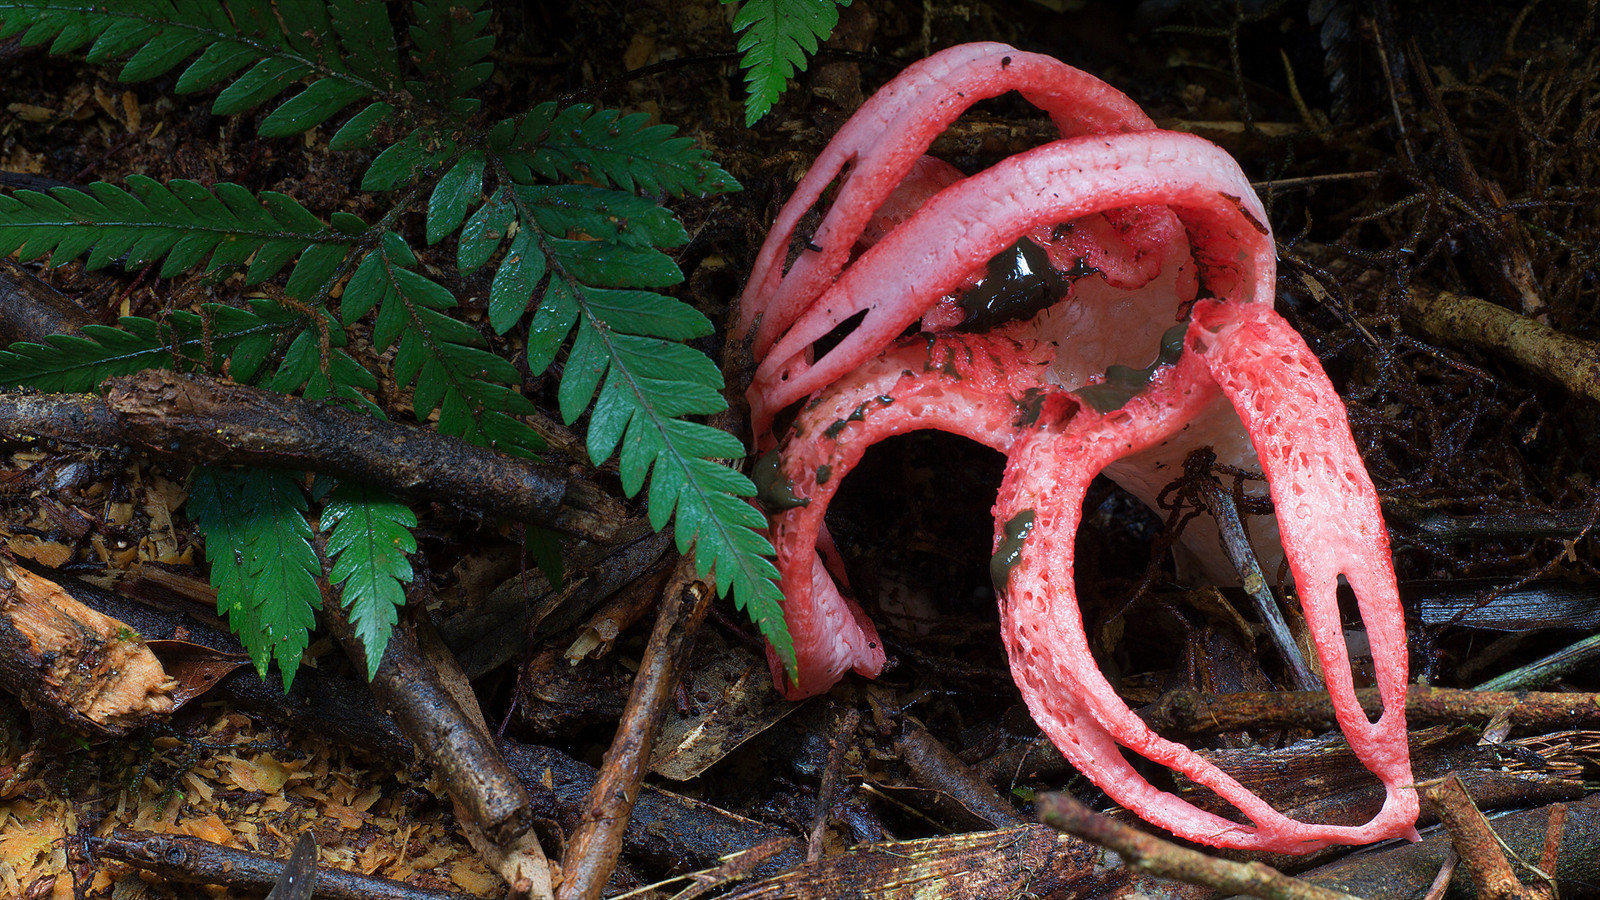 scariest looking mushrooms - mature clathrus archeri